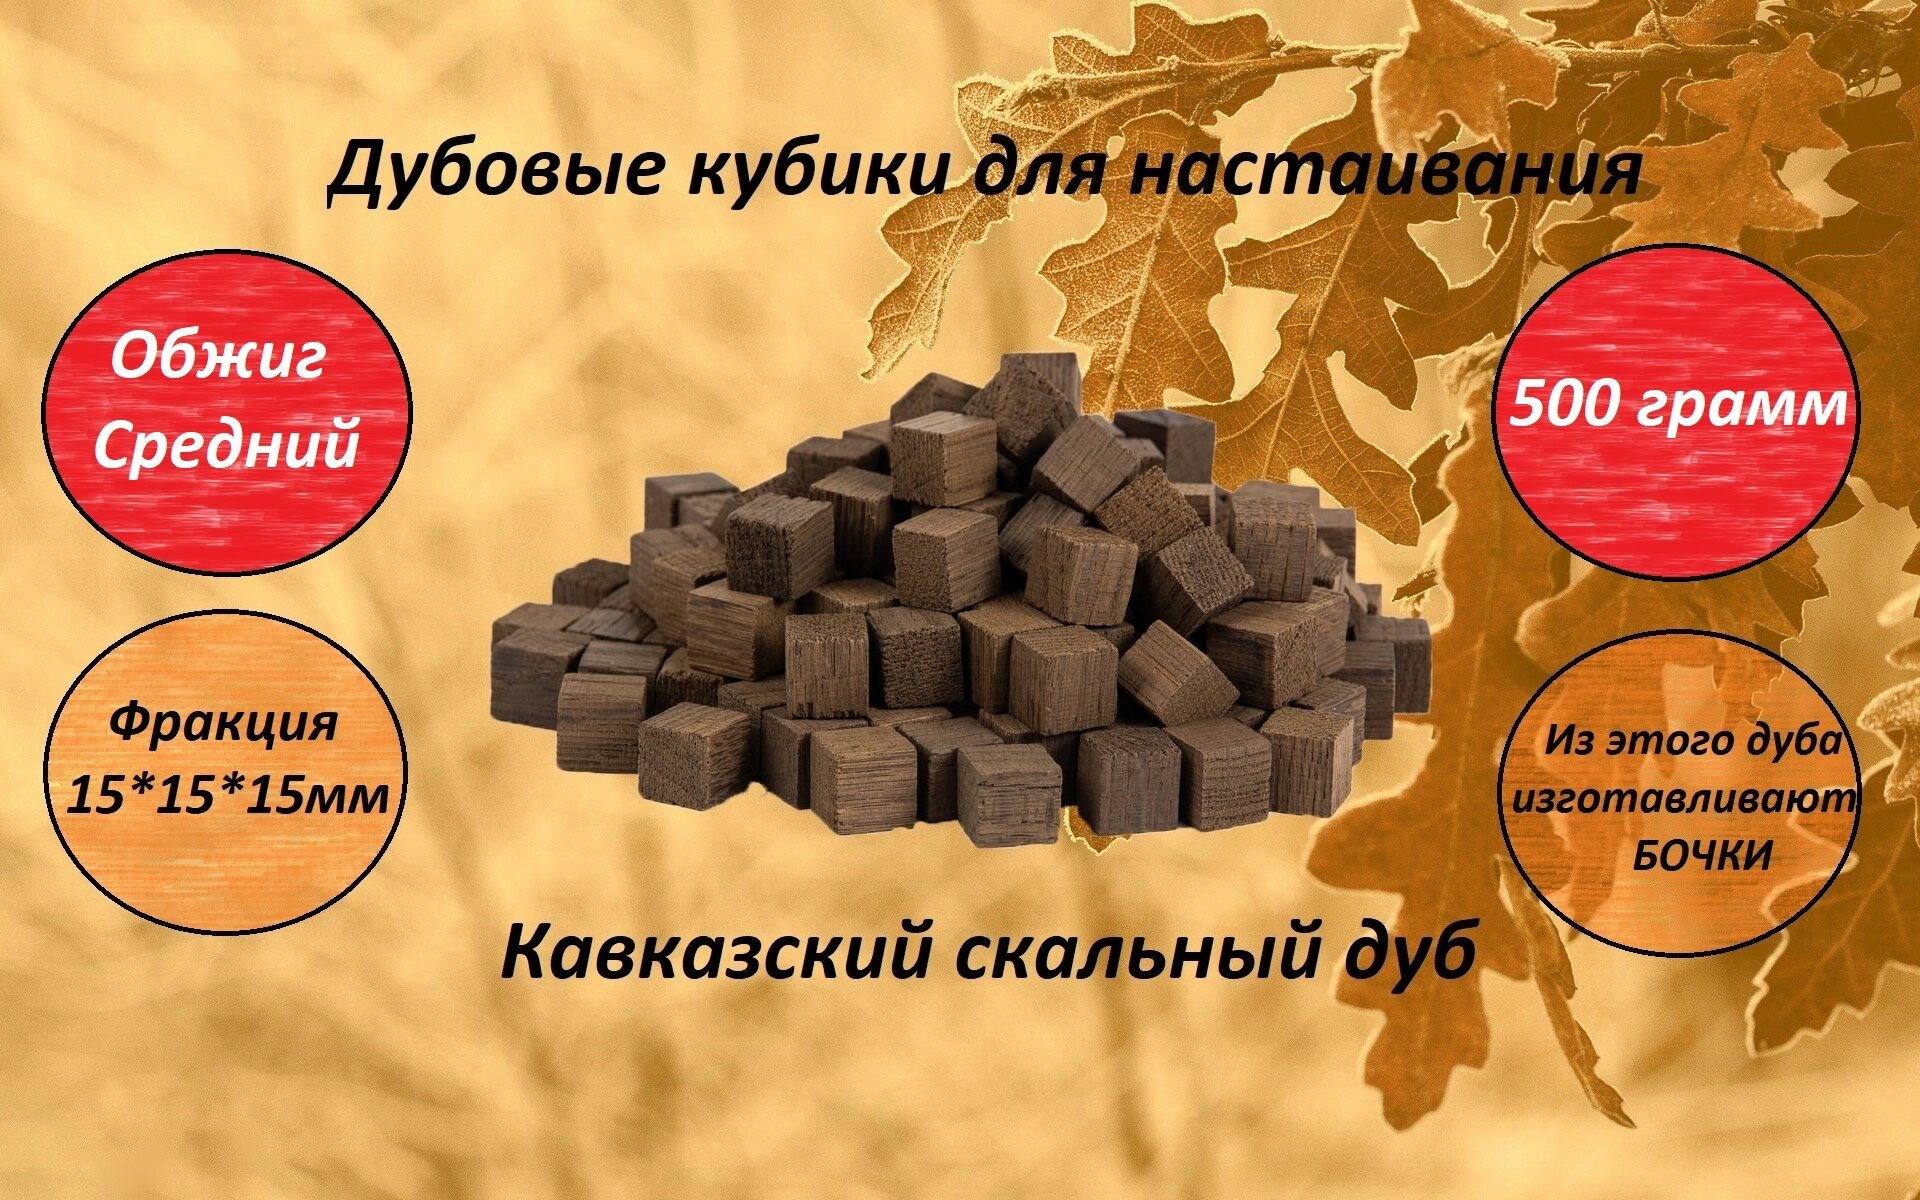 Кубики из кавказского скального дуба среднего обжига для настаивания 500 гр